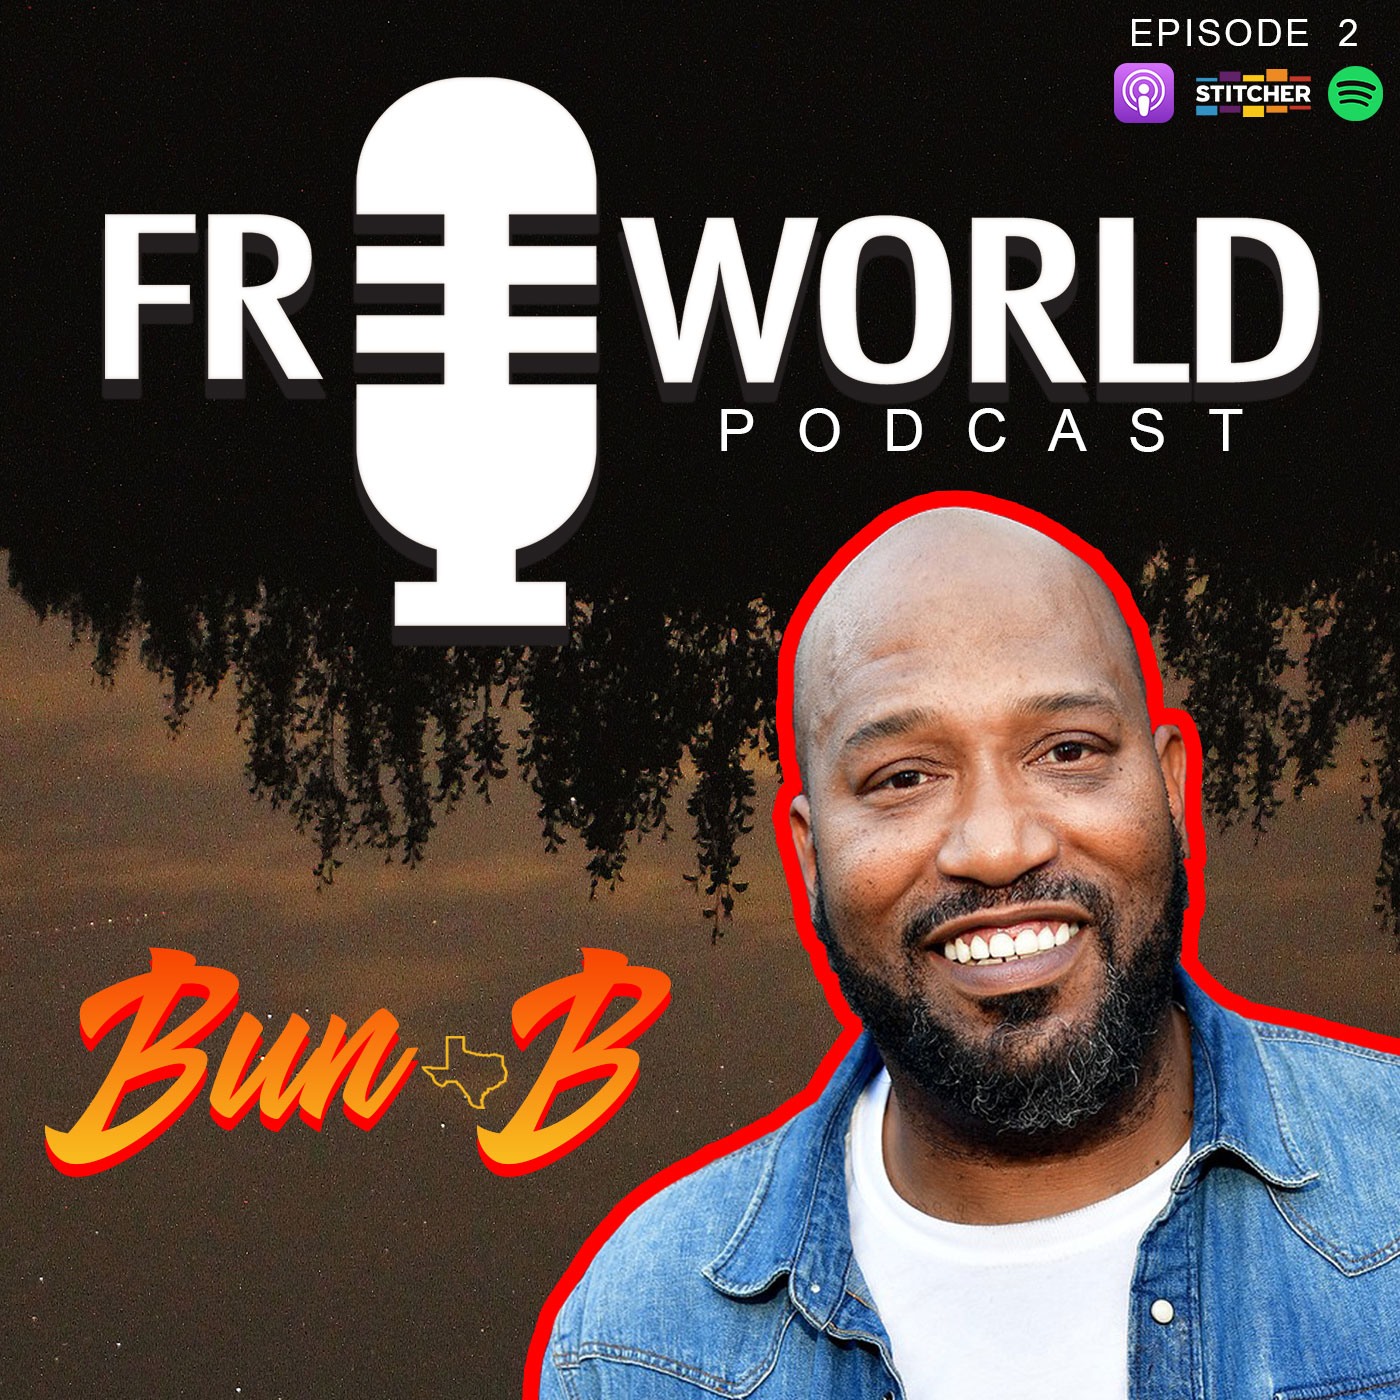 Episode 2: Bernard Freeman aka "Bun-B"